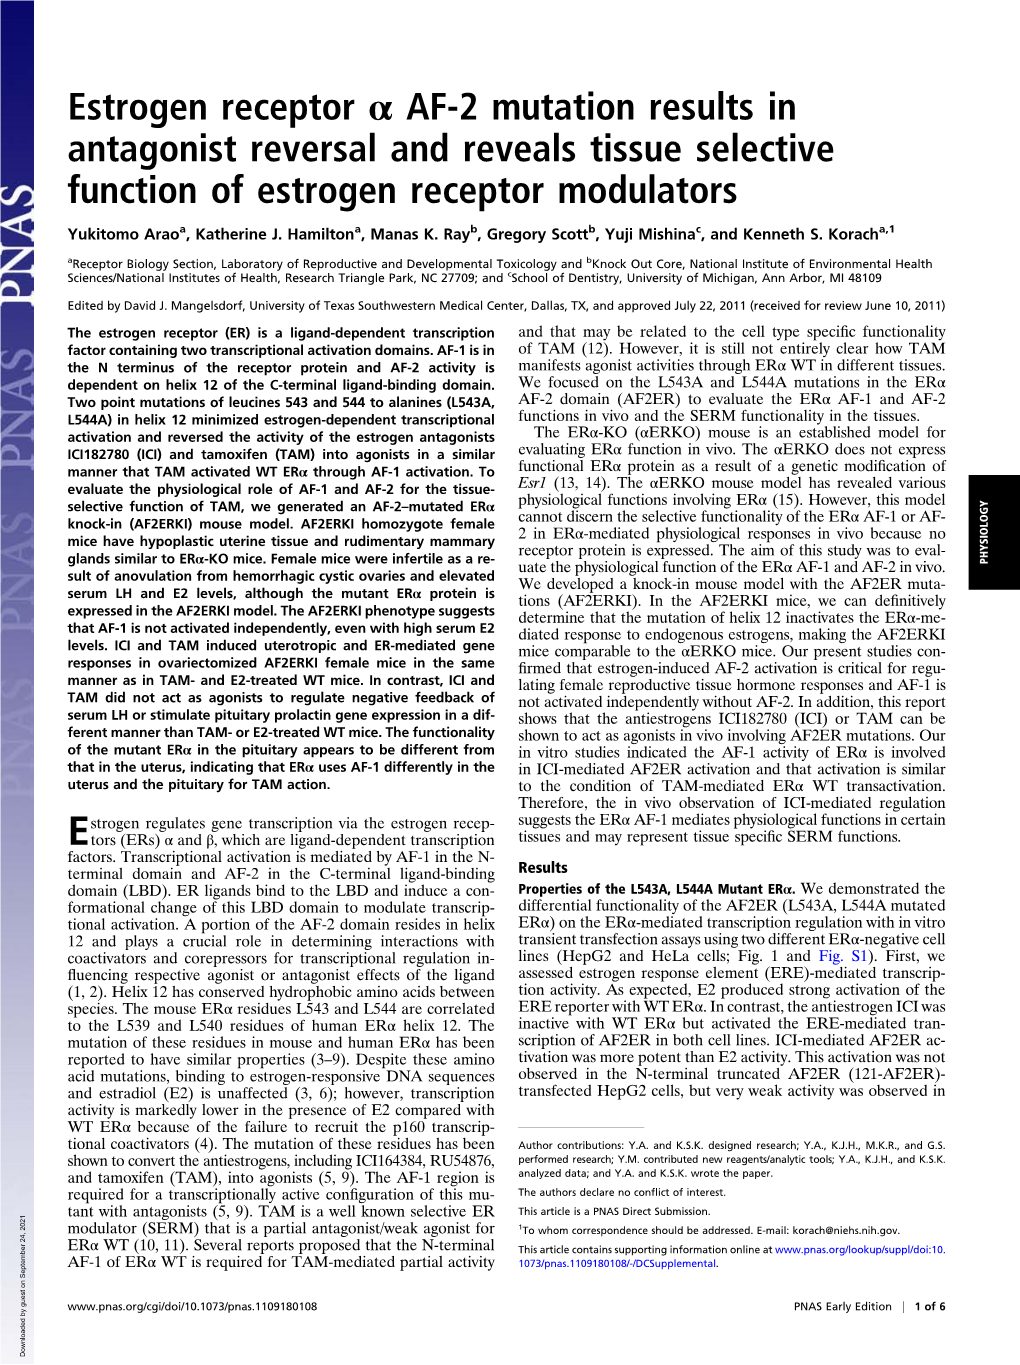 Estrogen Receptor Α AF-2 Mutation Results in Antagonist Reversal and Reveals Tissue Selective Function of Estrogen Receptor Modulators